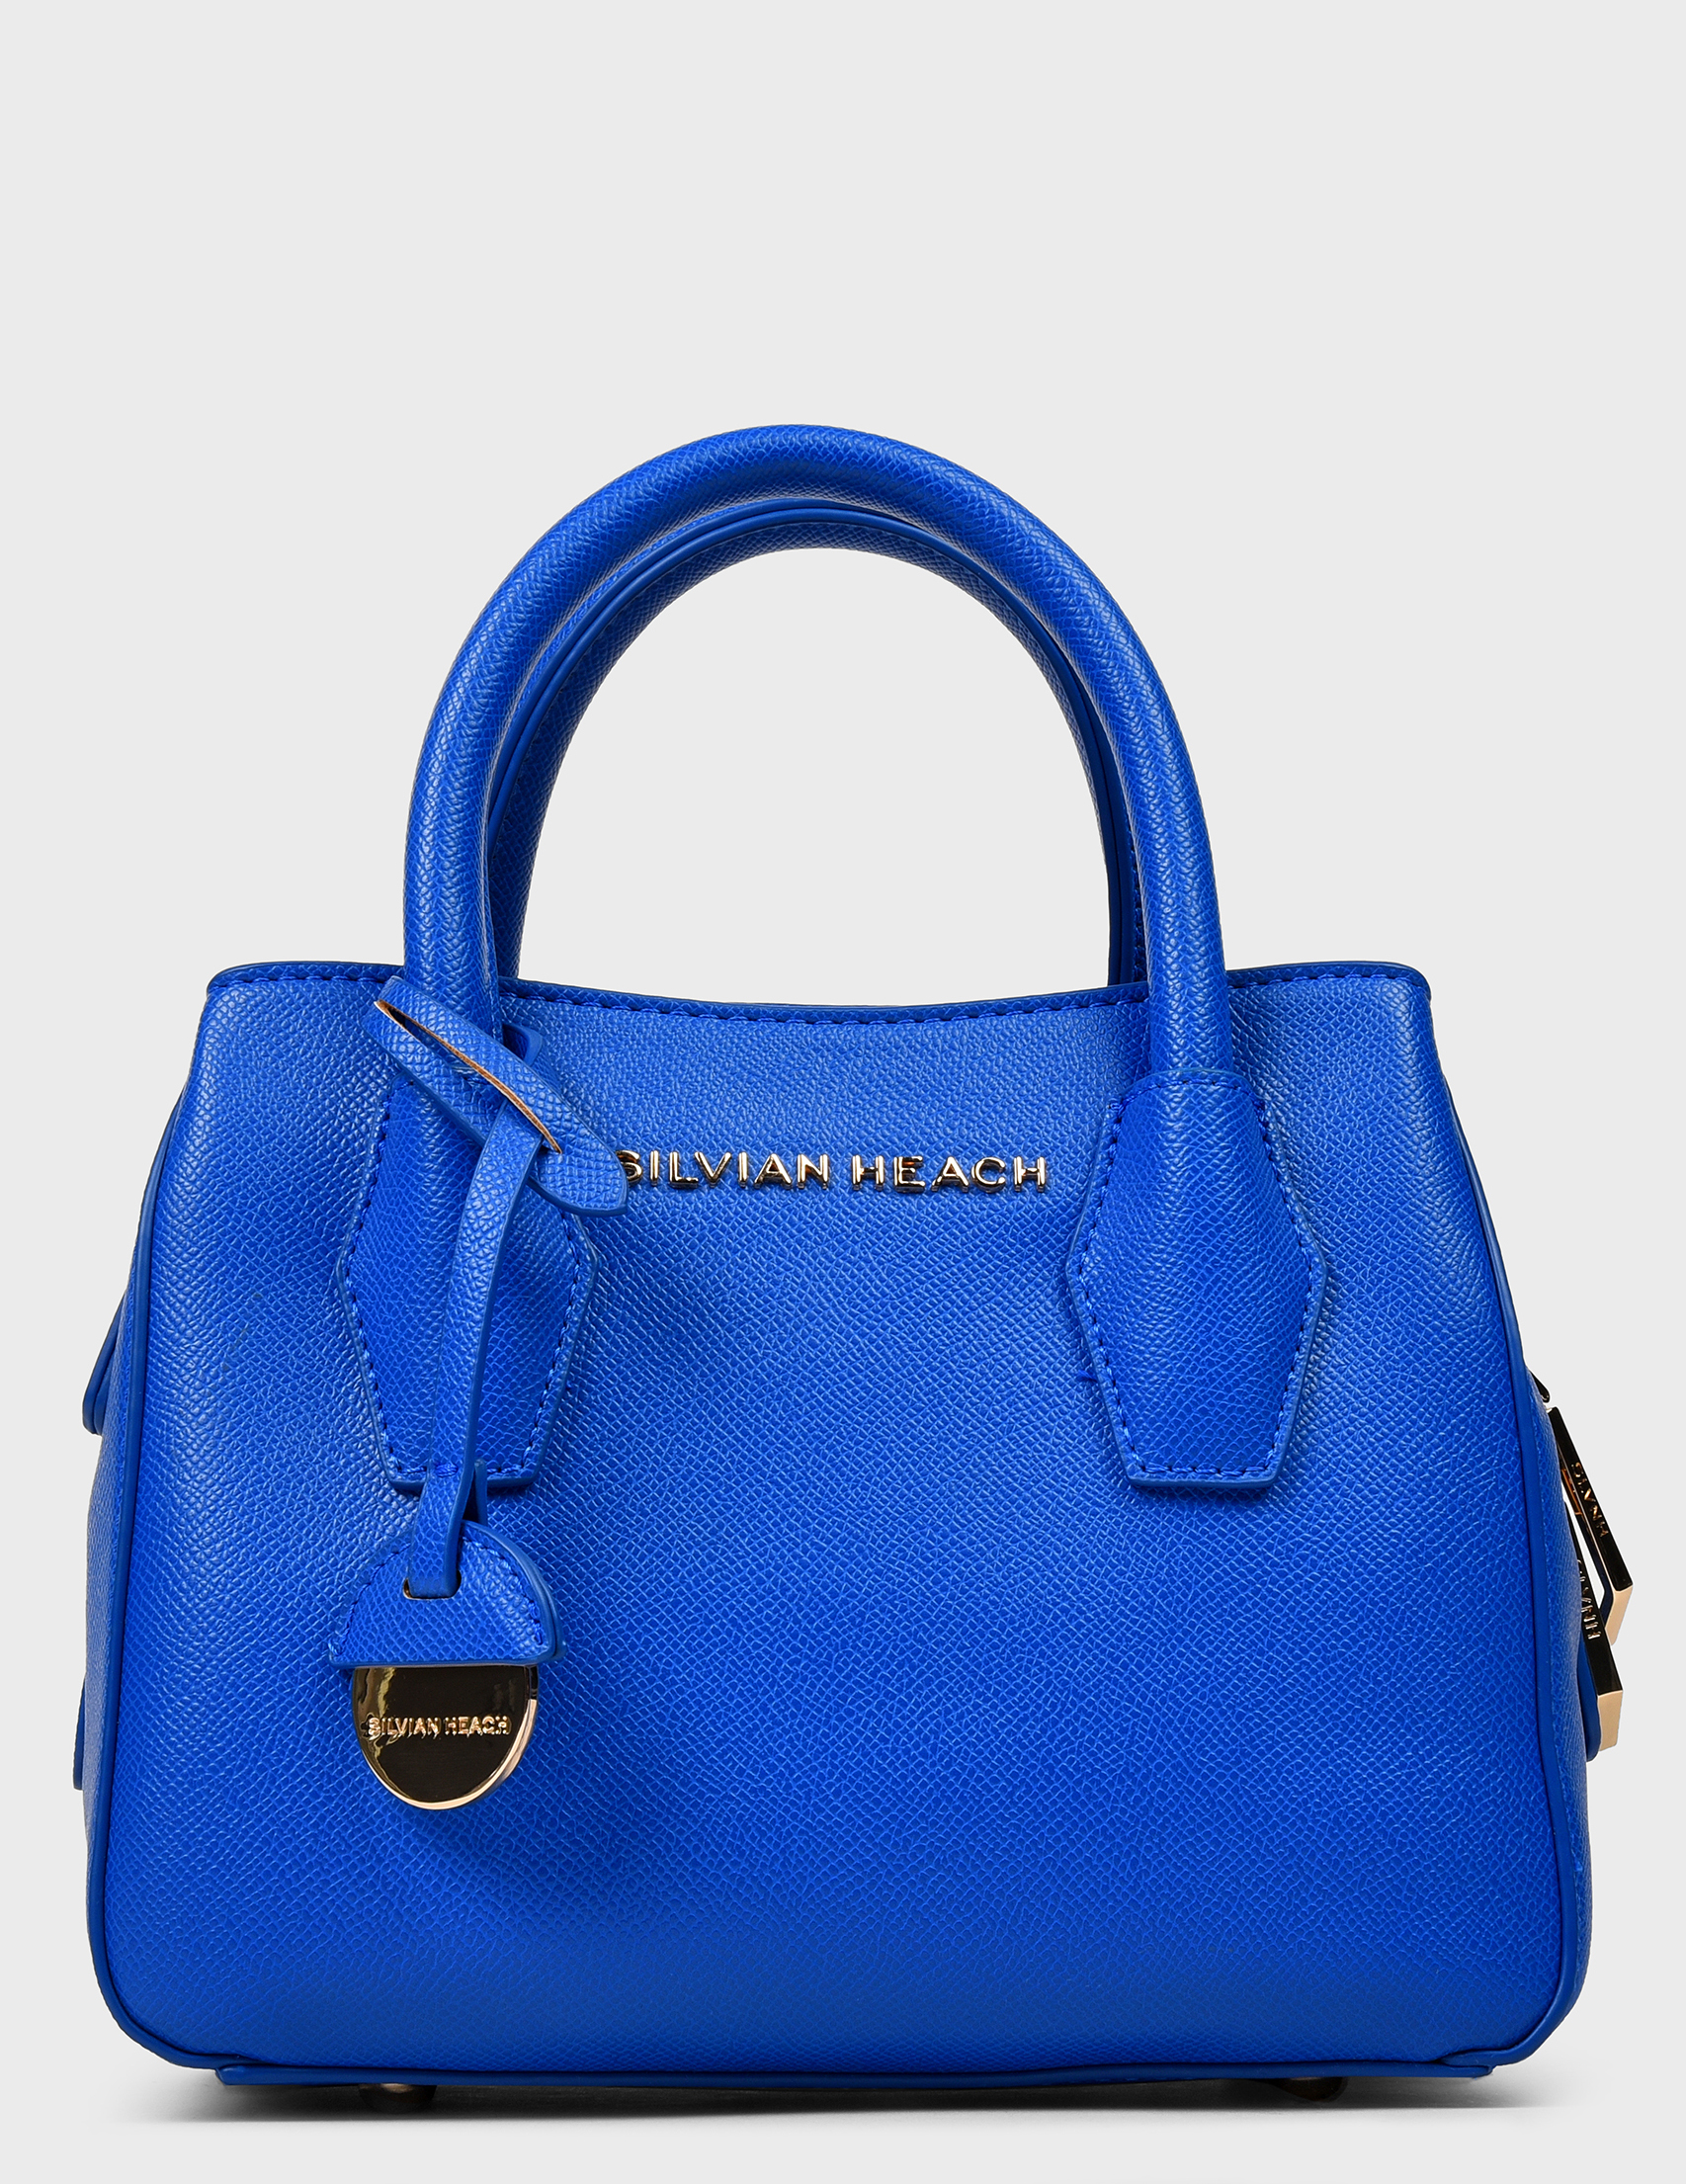 Купить голубую сумку женскую. Silvian Heach сумки. Aldo синяя сумка синяя. Сумка Pia passi синяя. Carvela сумки синяя.